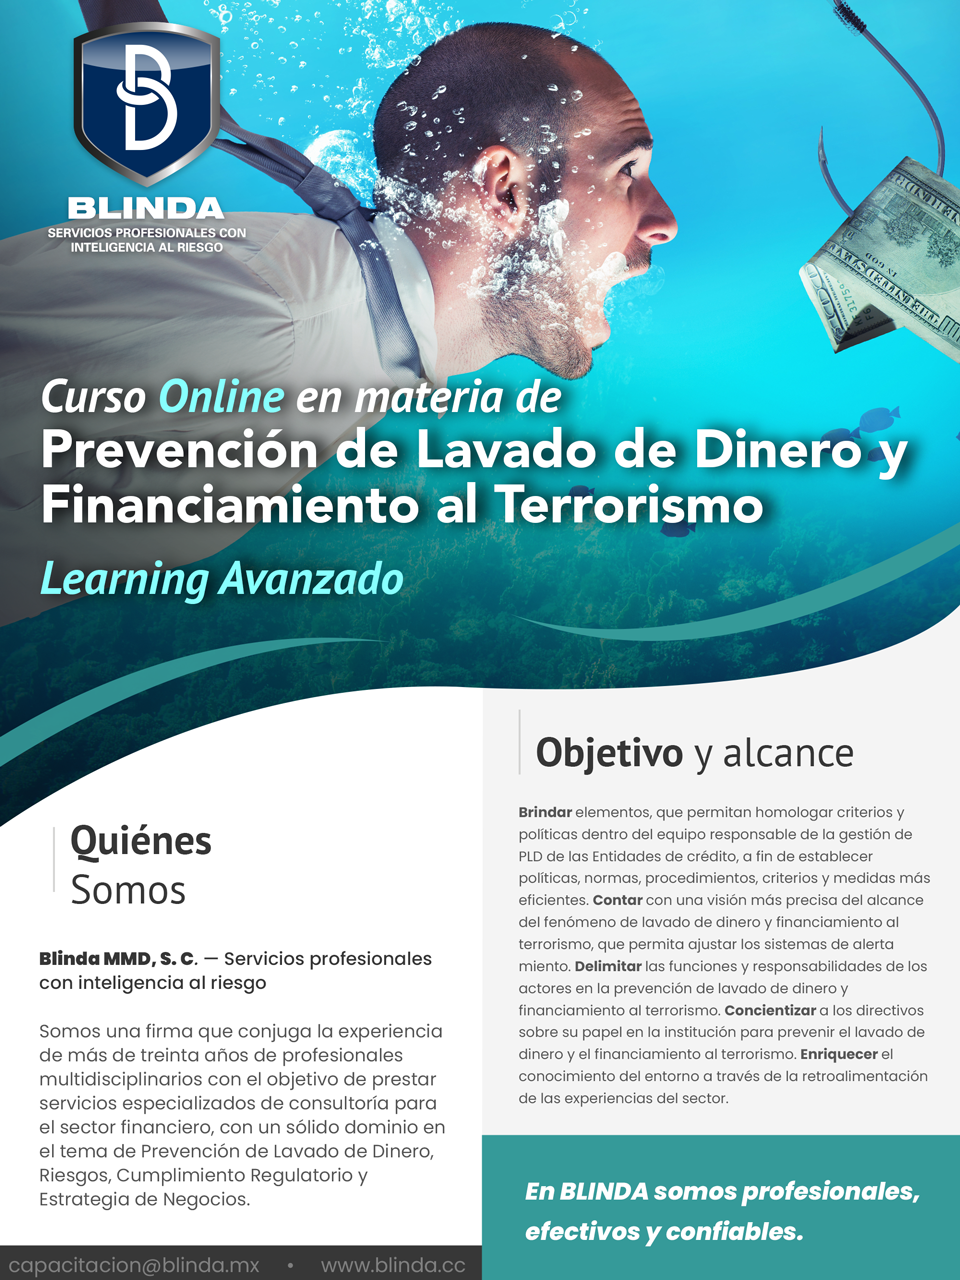 Curso Online en materia de Prevención de Lavado de Dinero y Financiamiento al Terrorismo.